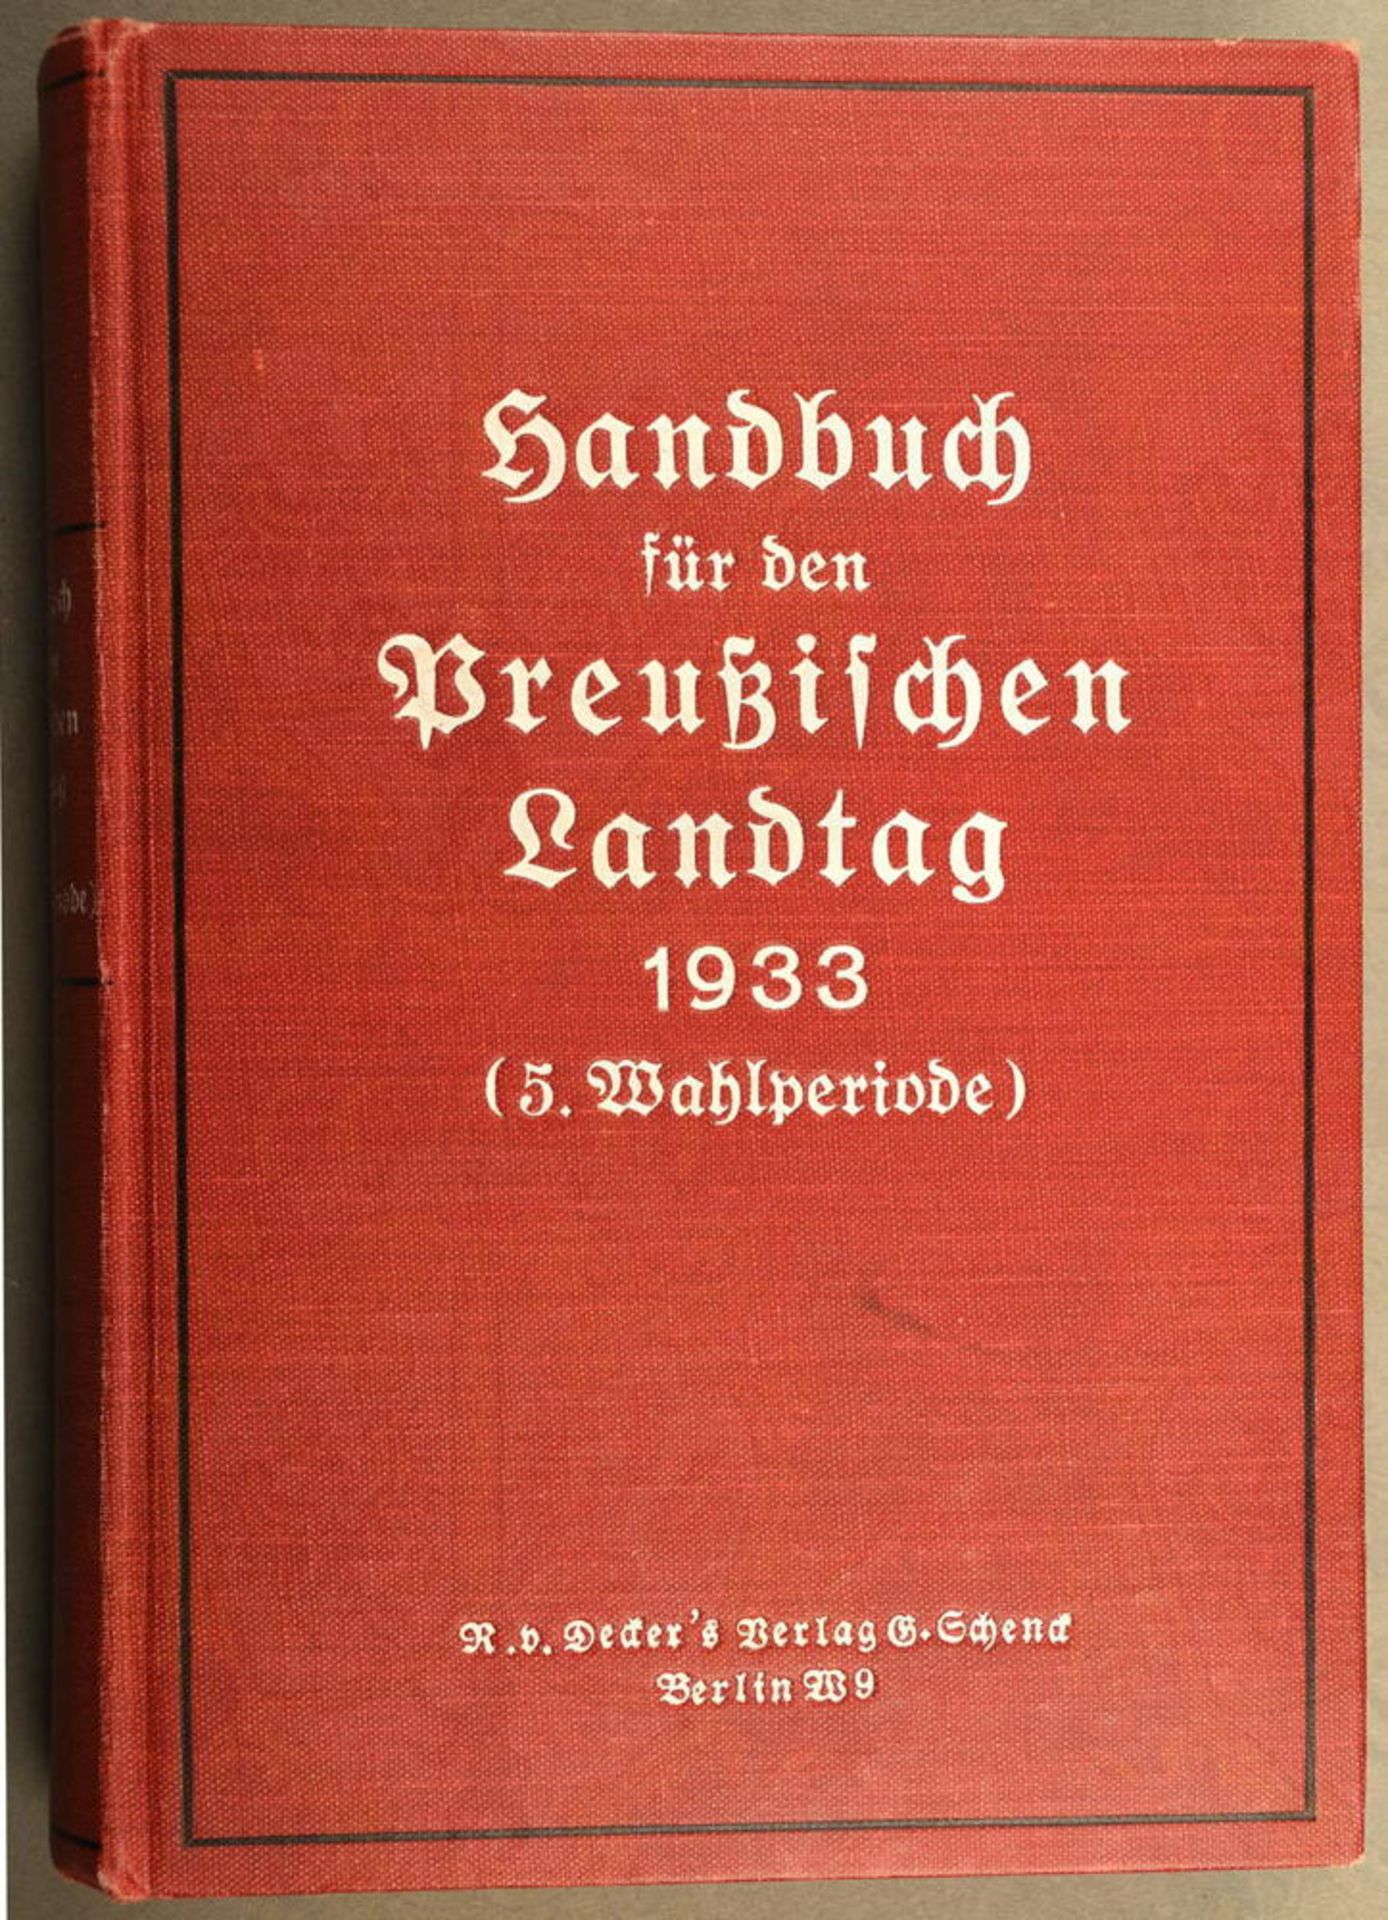 HANDBUCH FÜR DEN PREUßISCHEN LANDTAG 1933